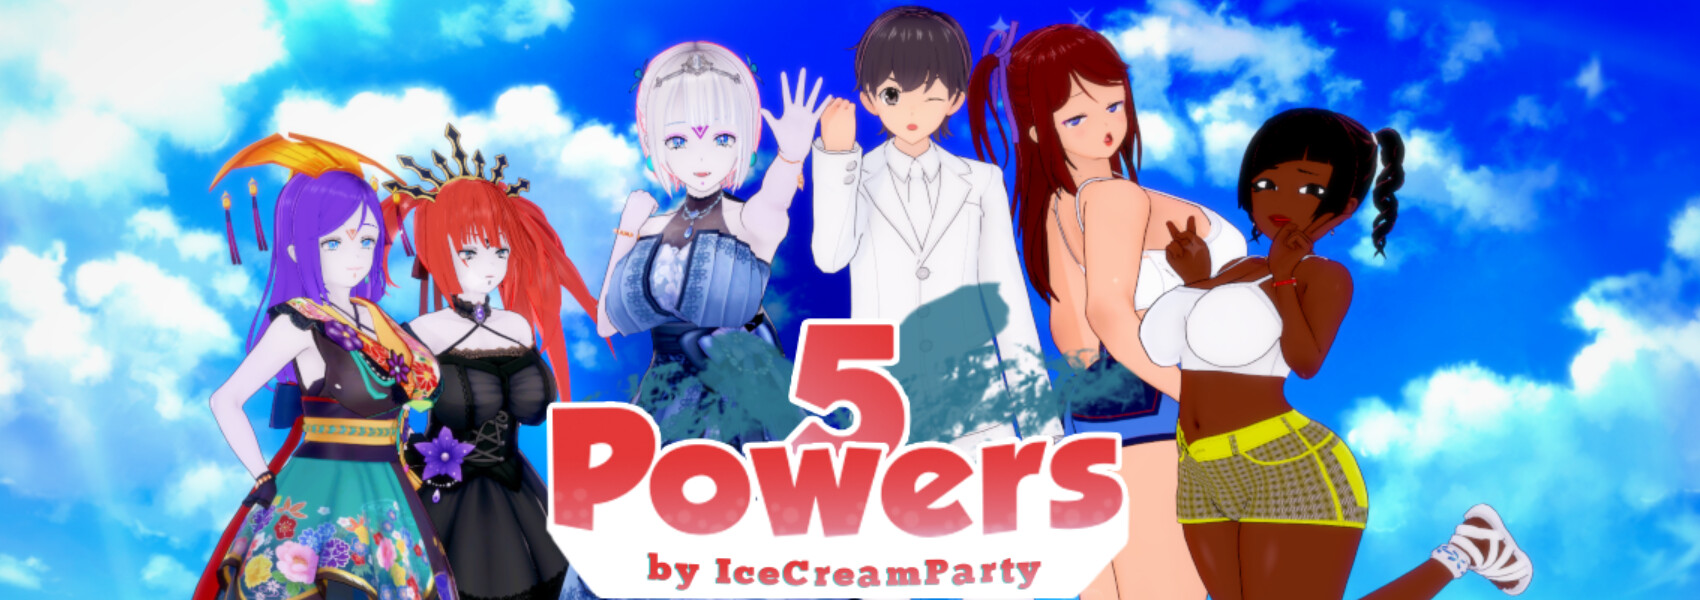 5 Powers Main Image